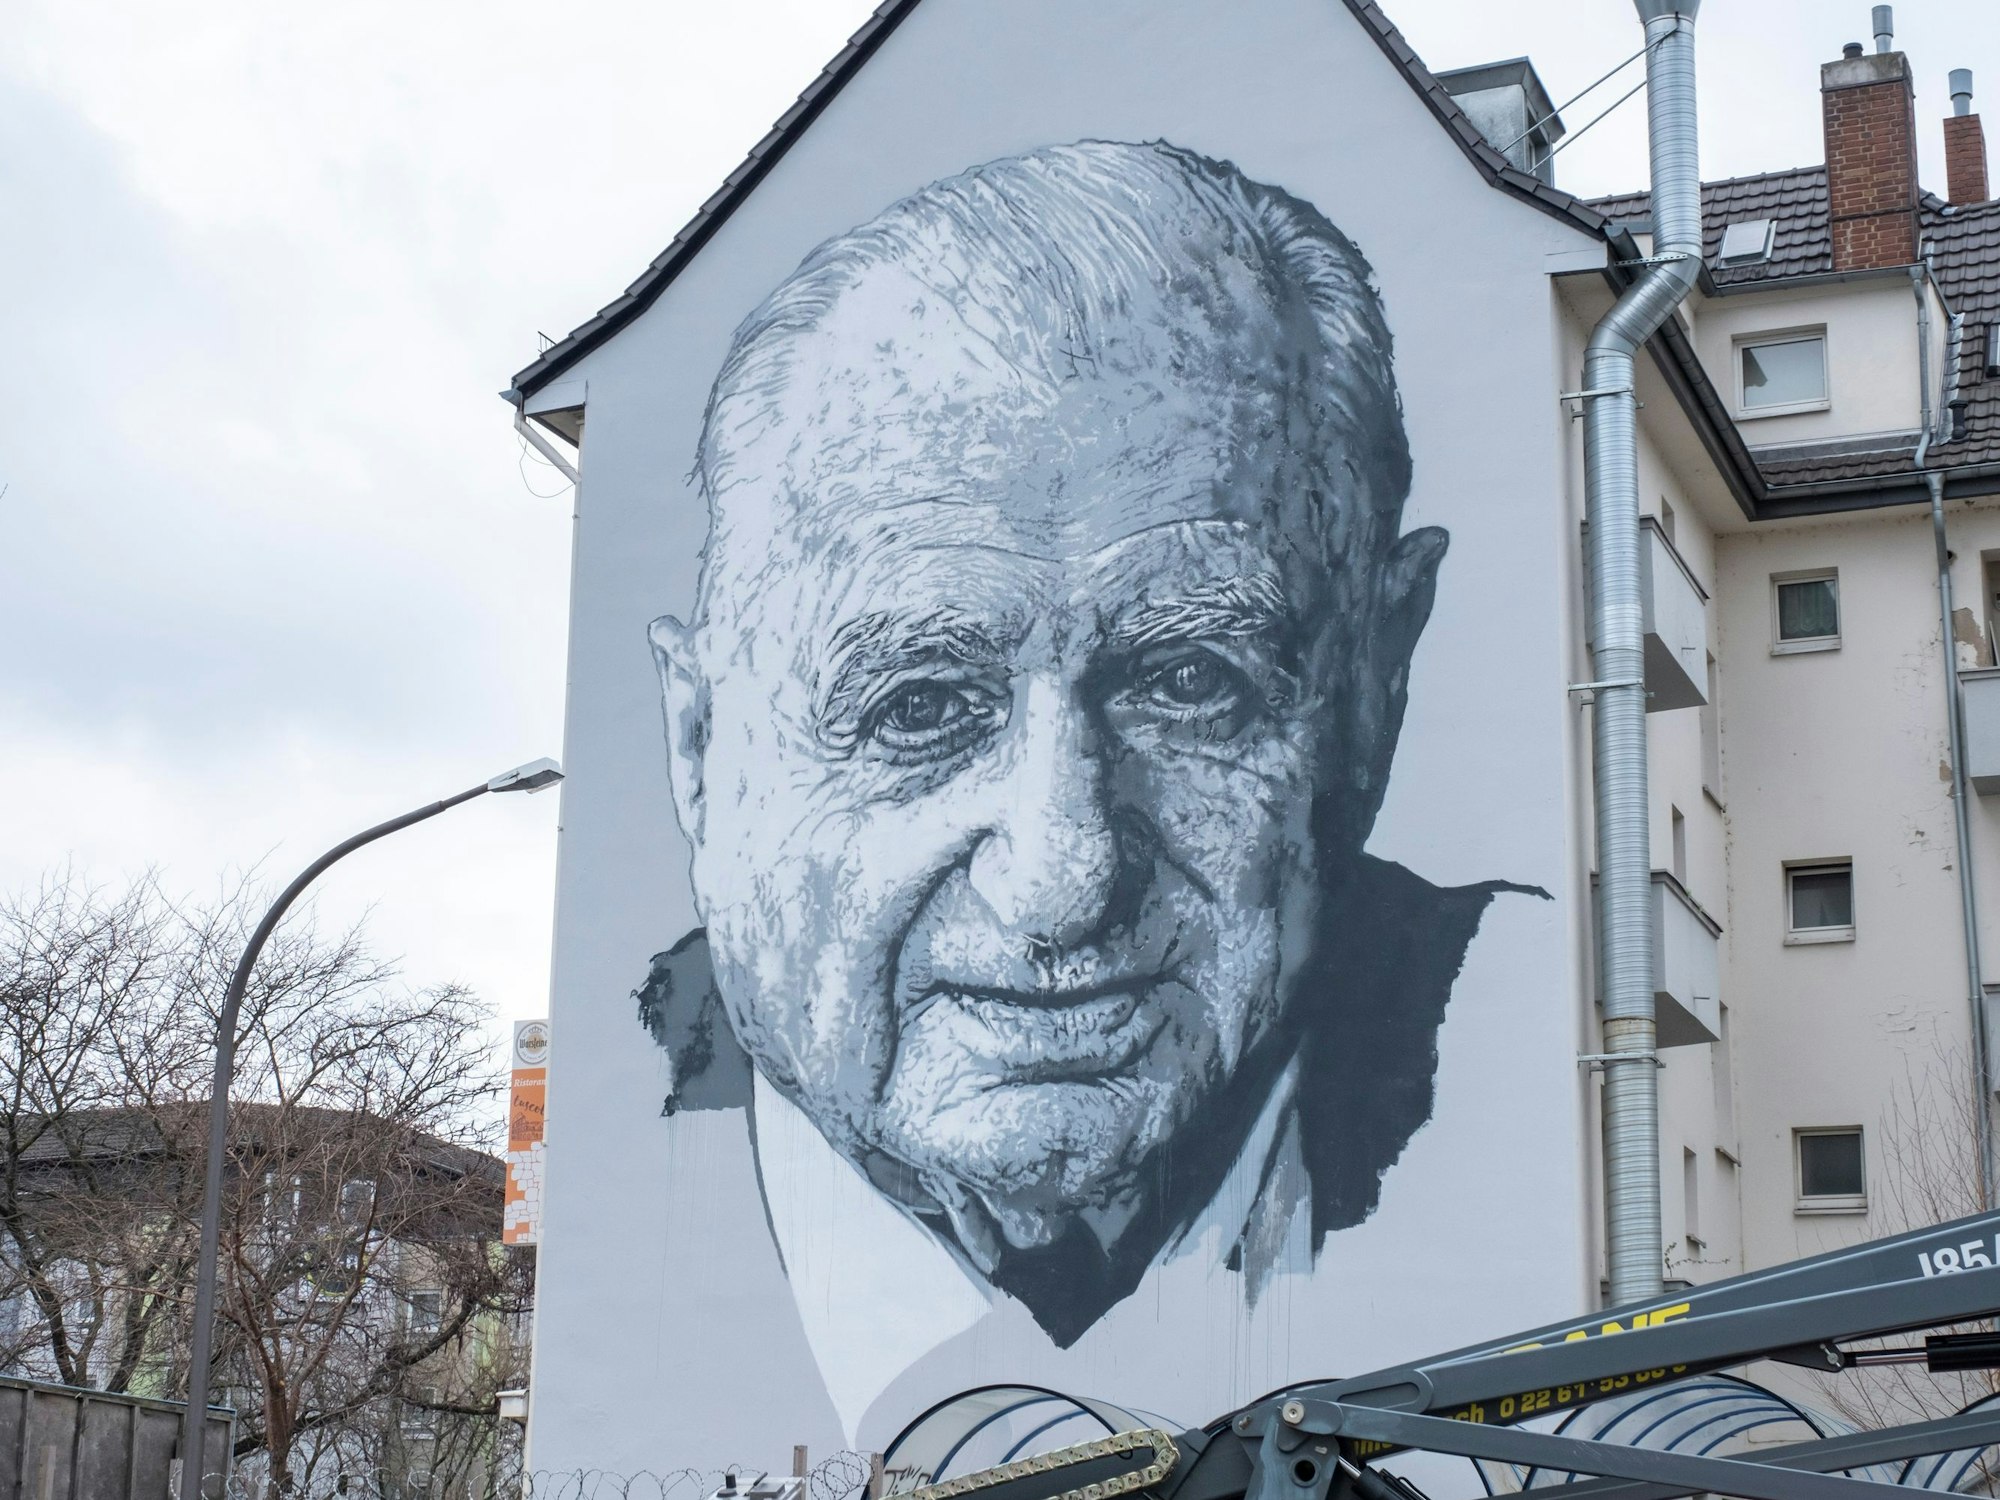 Künstler Hendrik Beikirch hat ein Porträt von Hans Riegel an eine Hauswand in Bonn gemalt.